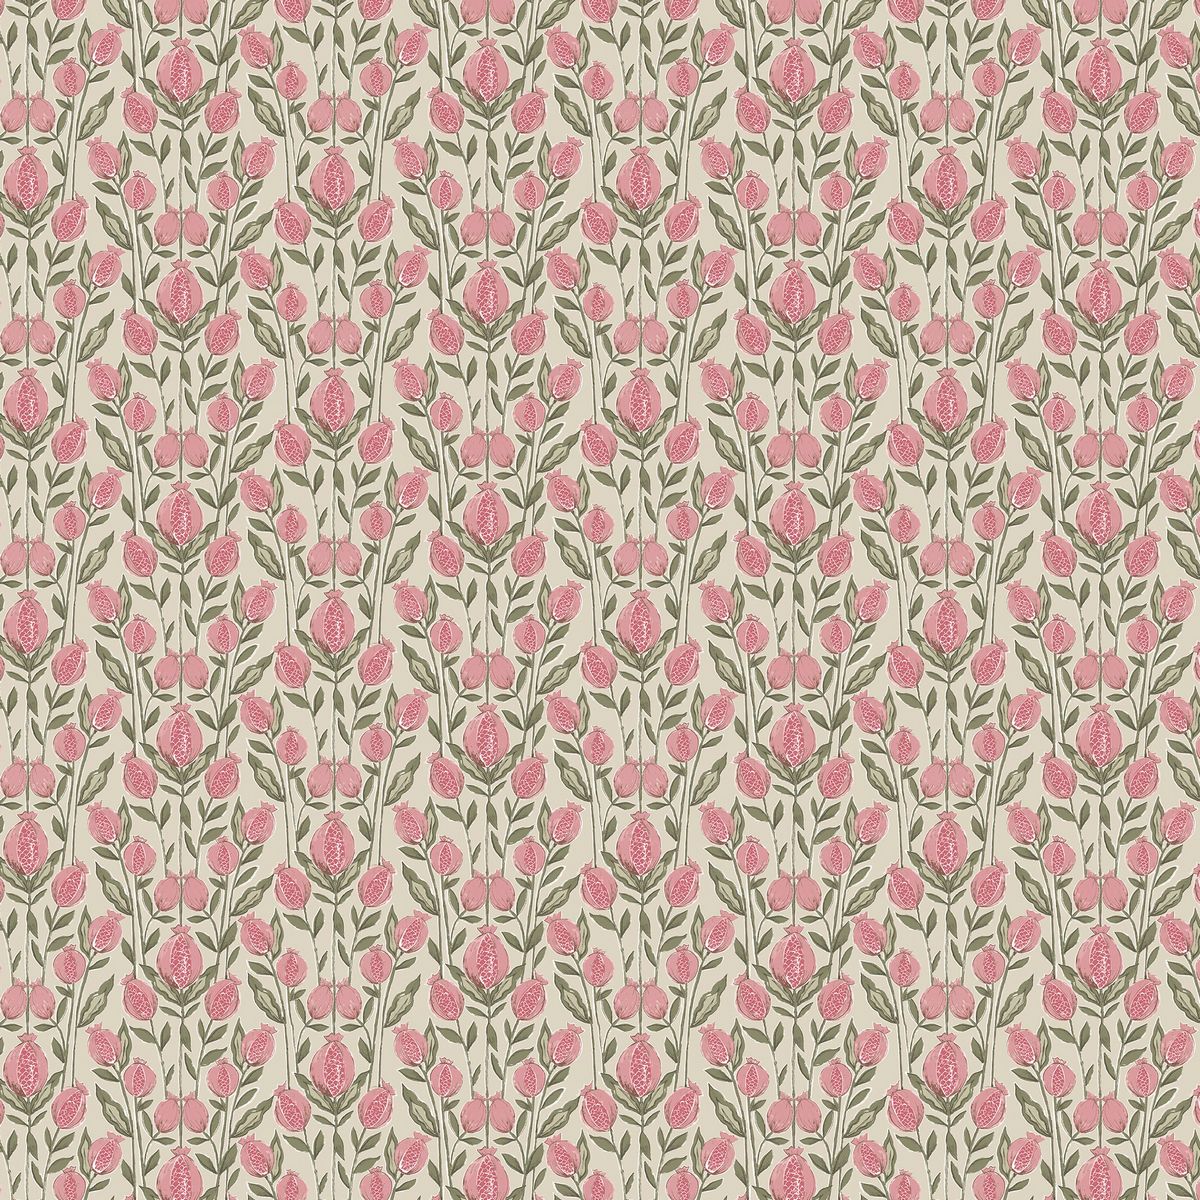 Rithani Auburn Fabric by Voyage Maison